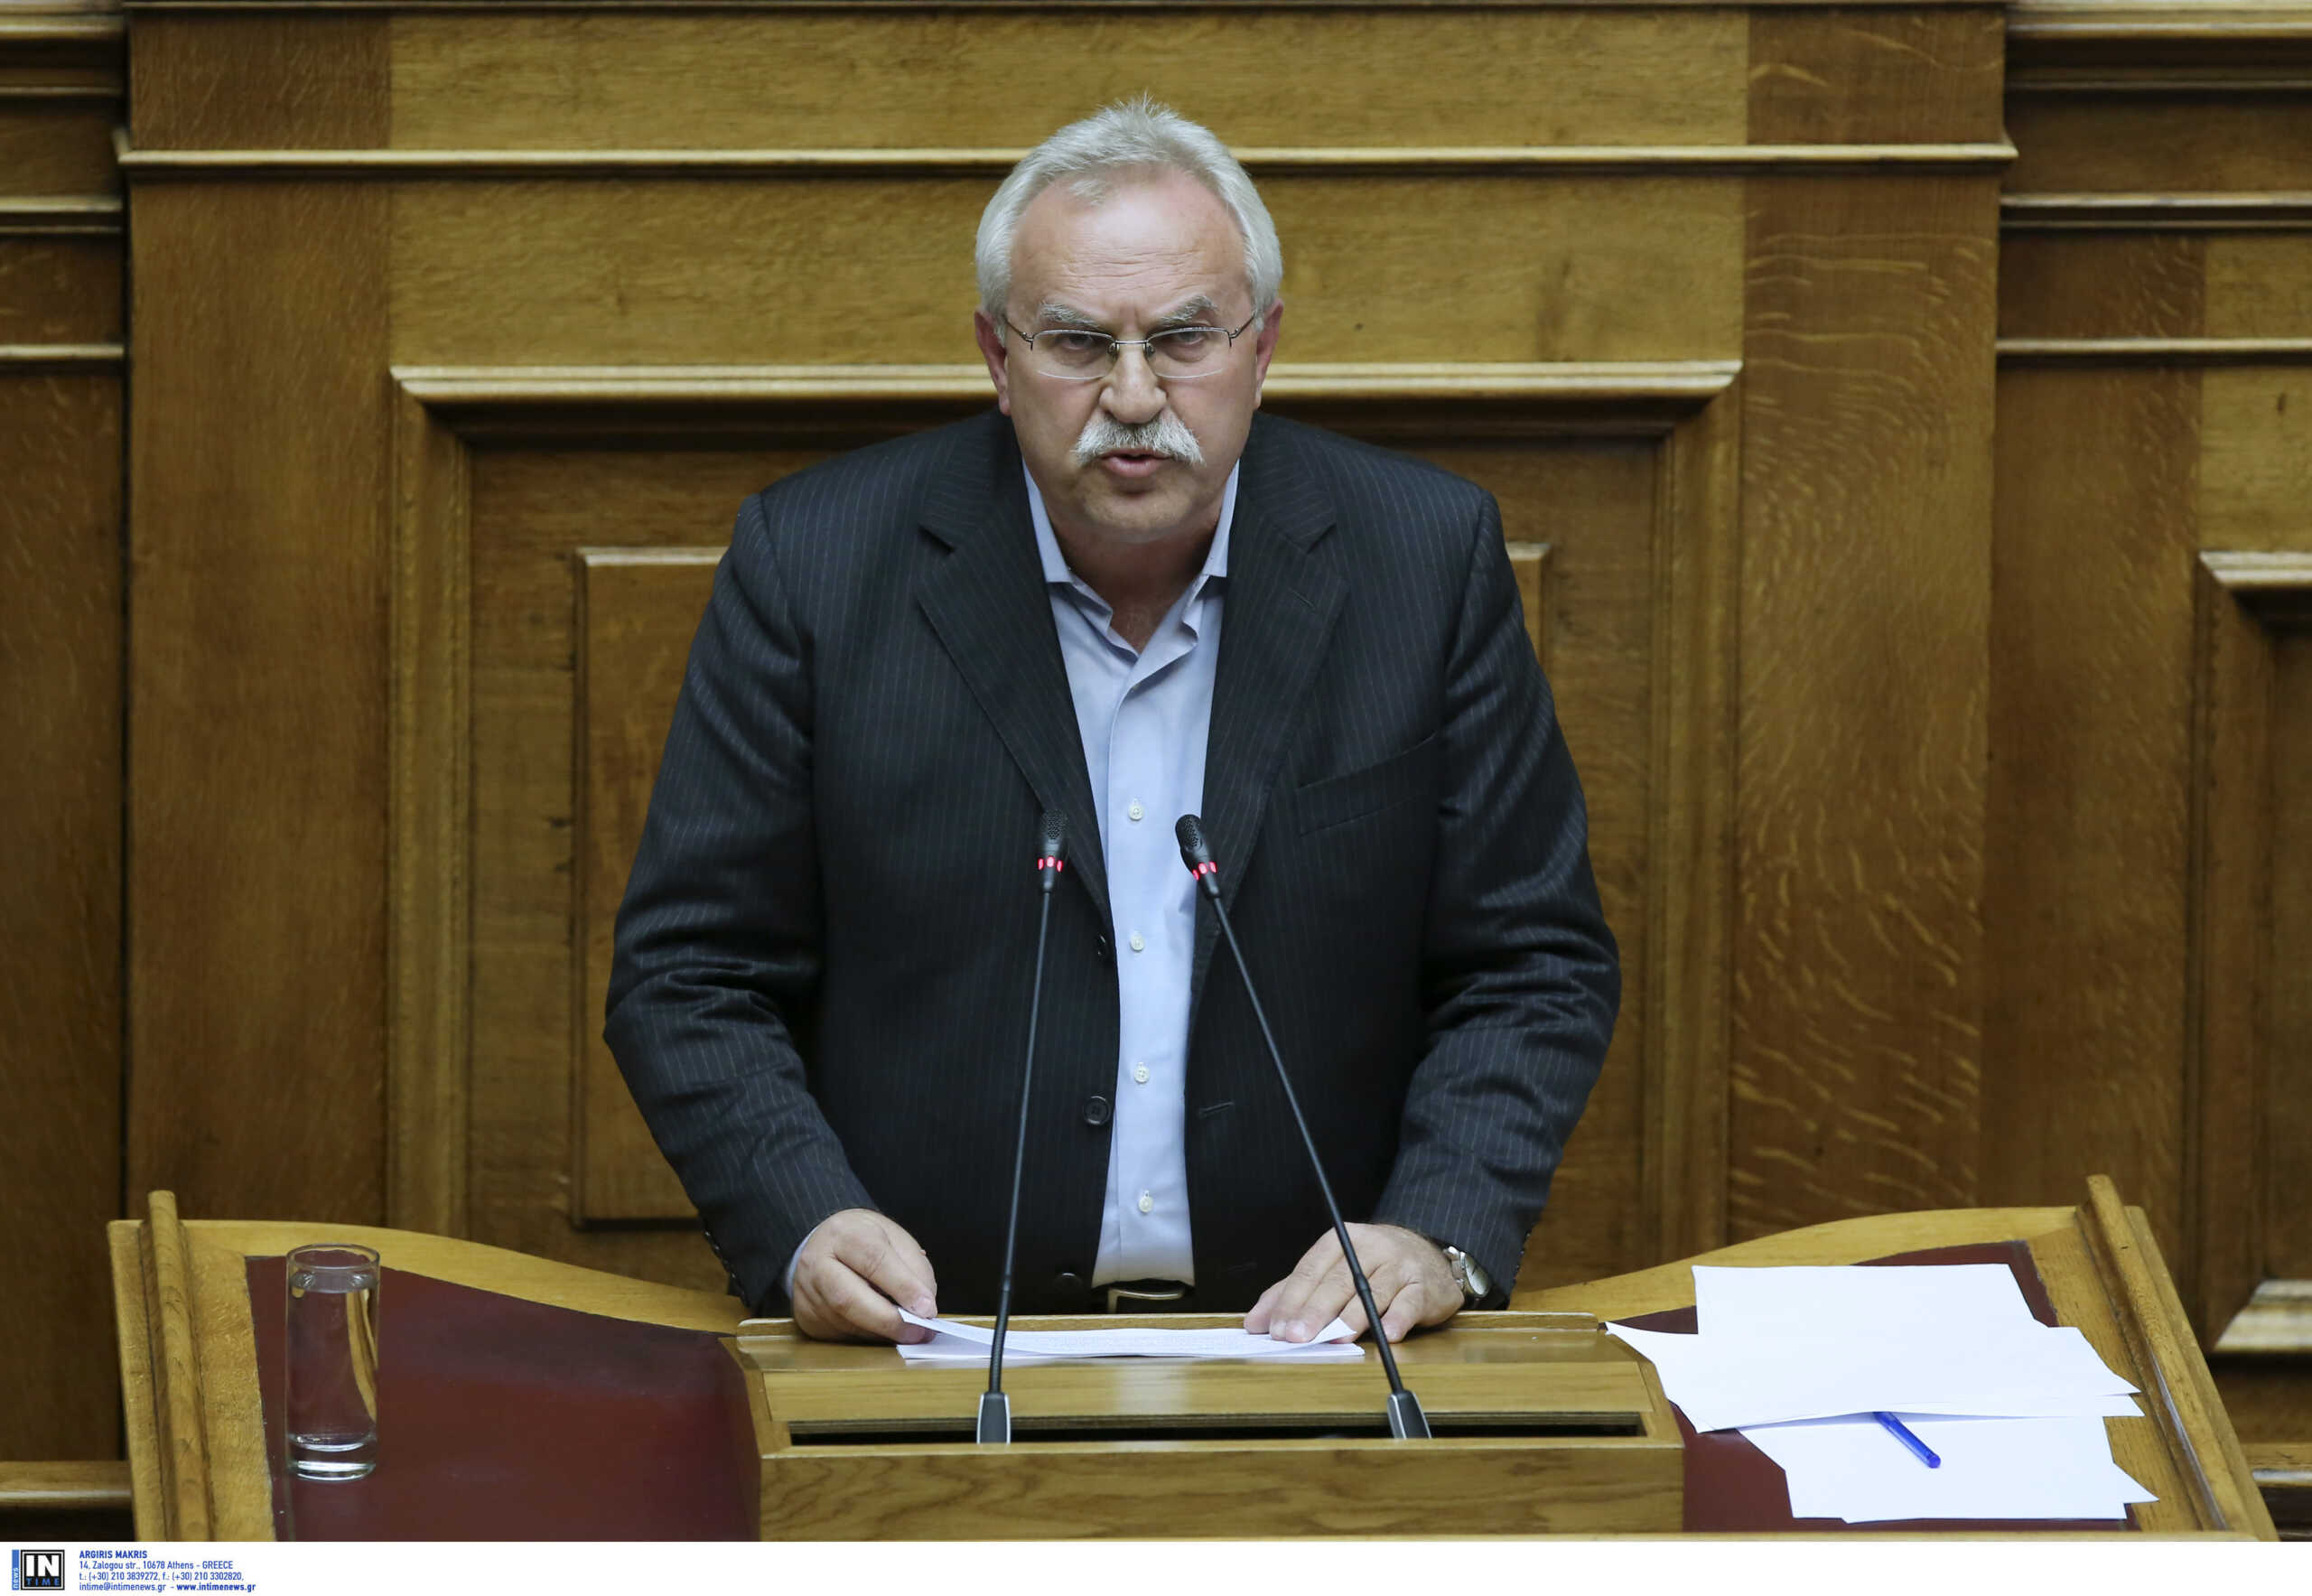 Ορκίστηκε βουλευτής Δωδεκανήσου του ΣΥΡΙΖΑ ο Δημήτρης Γάκης